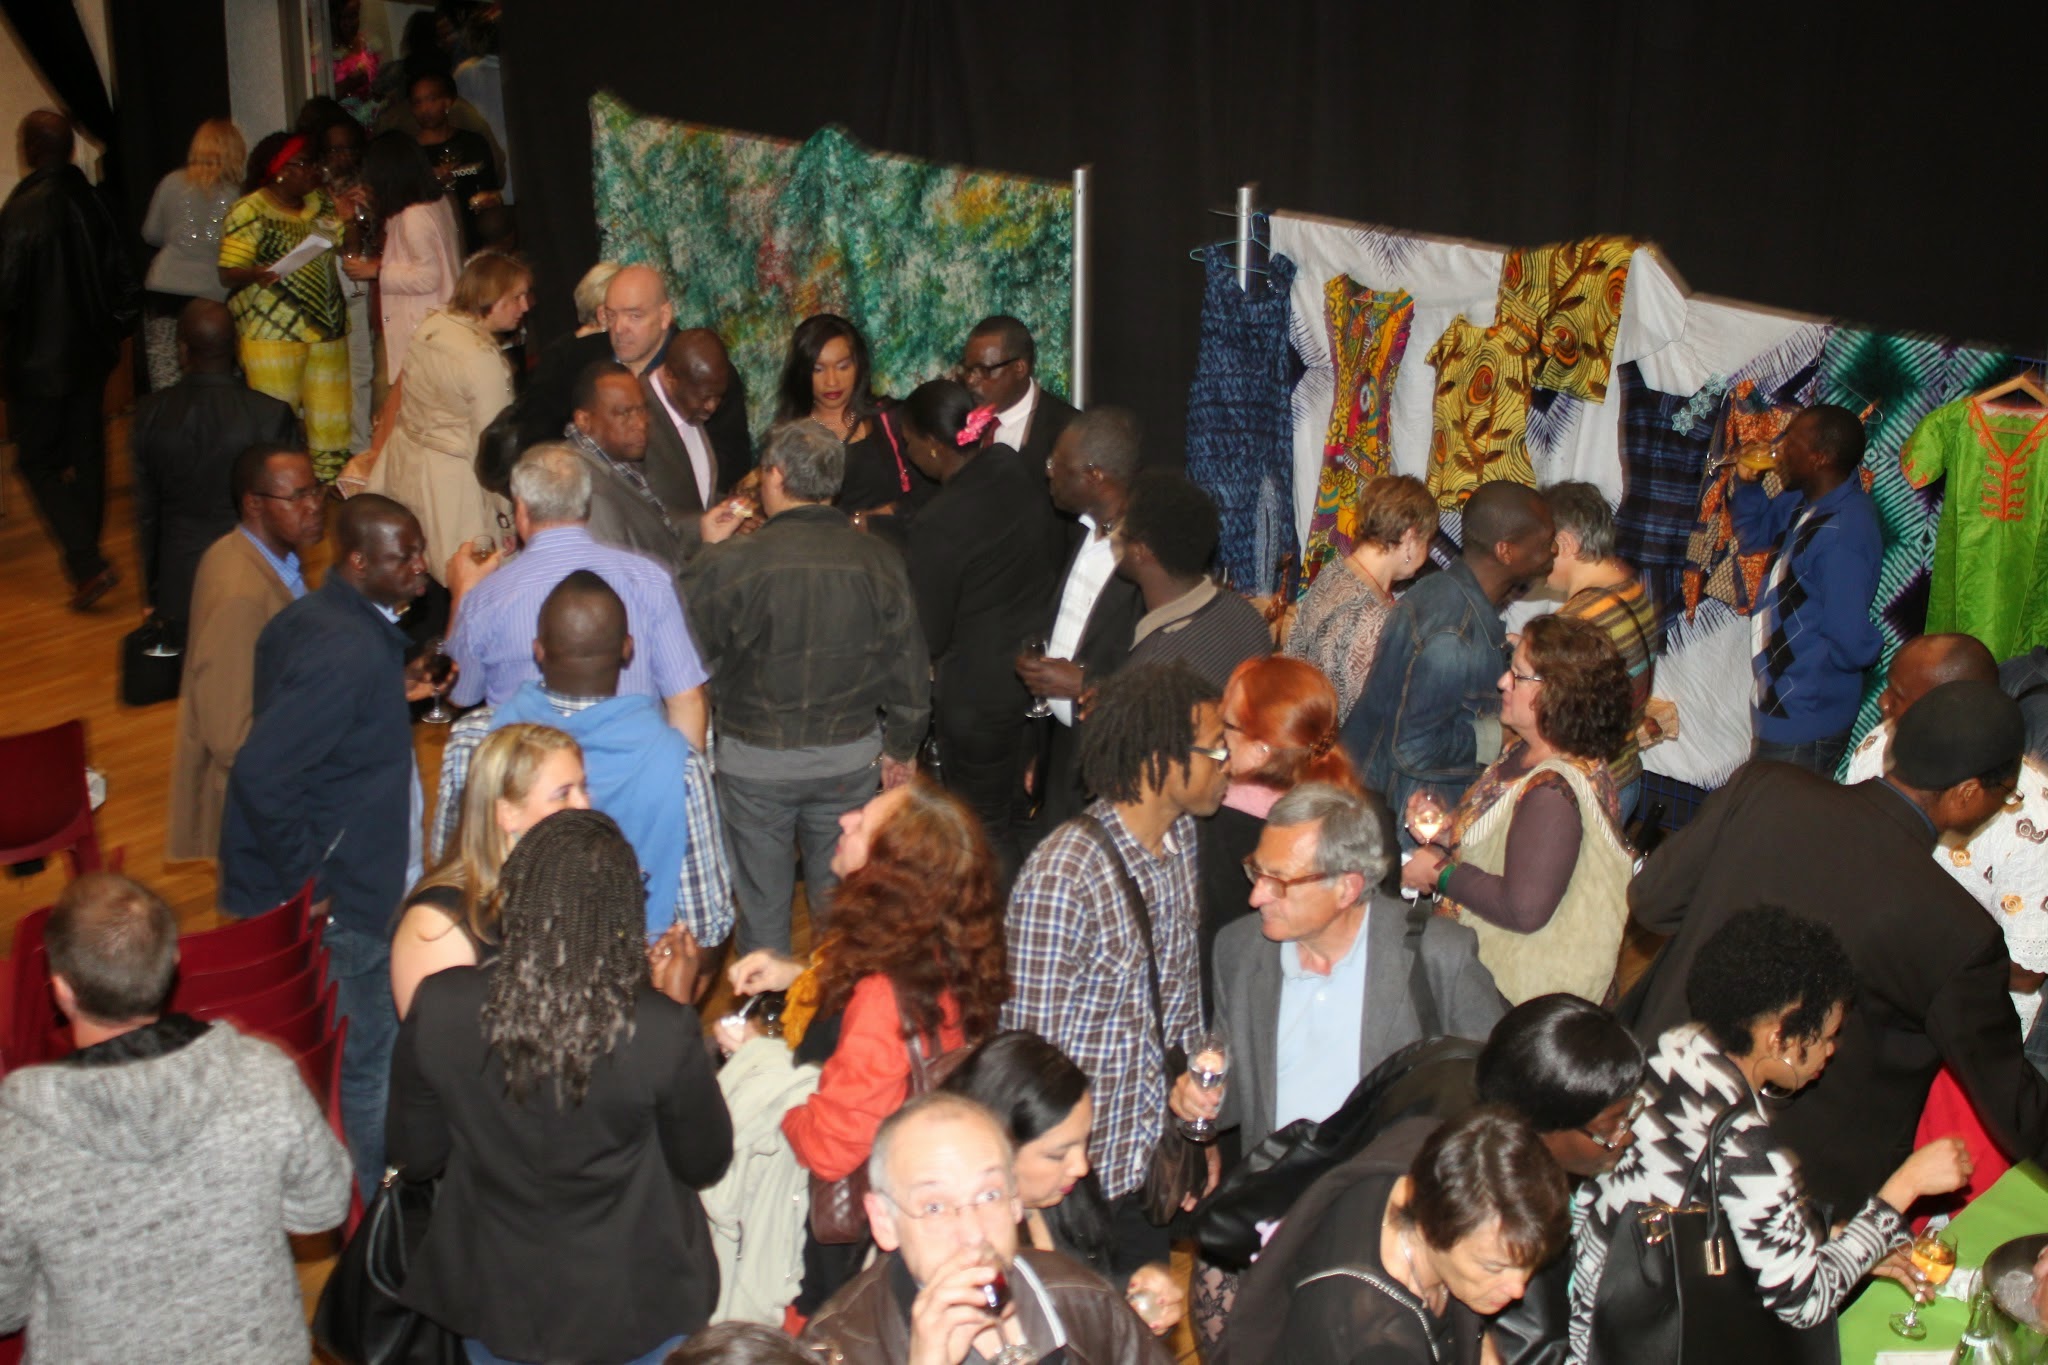 Africa 50 fête ses 5 ans et lance le festival NGOMA les Arts Africain